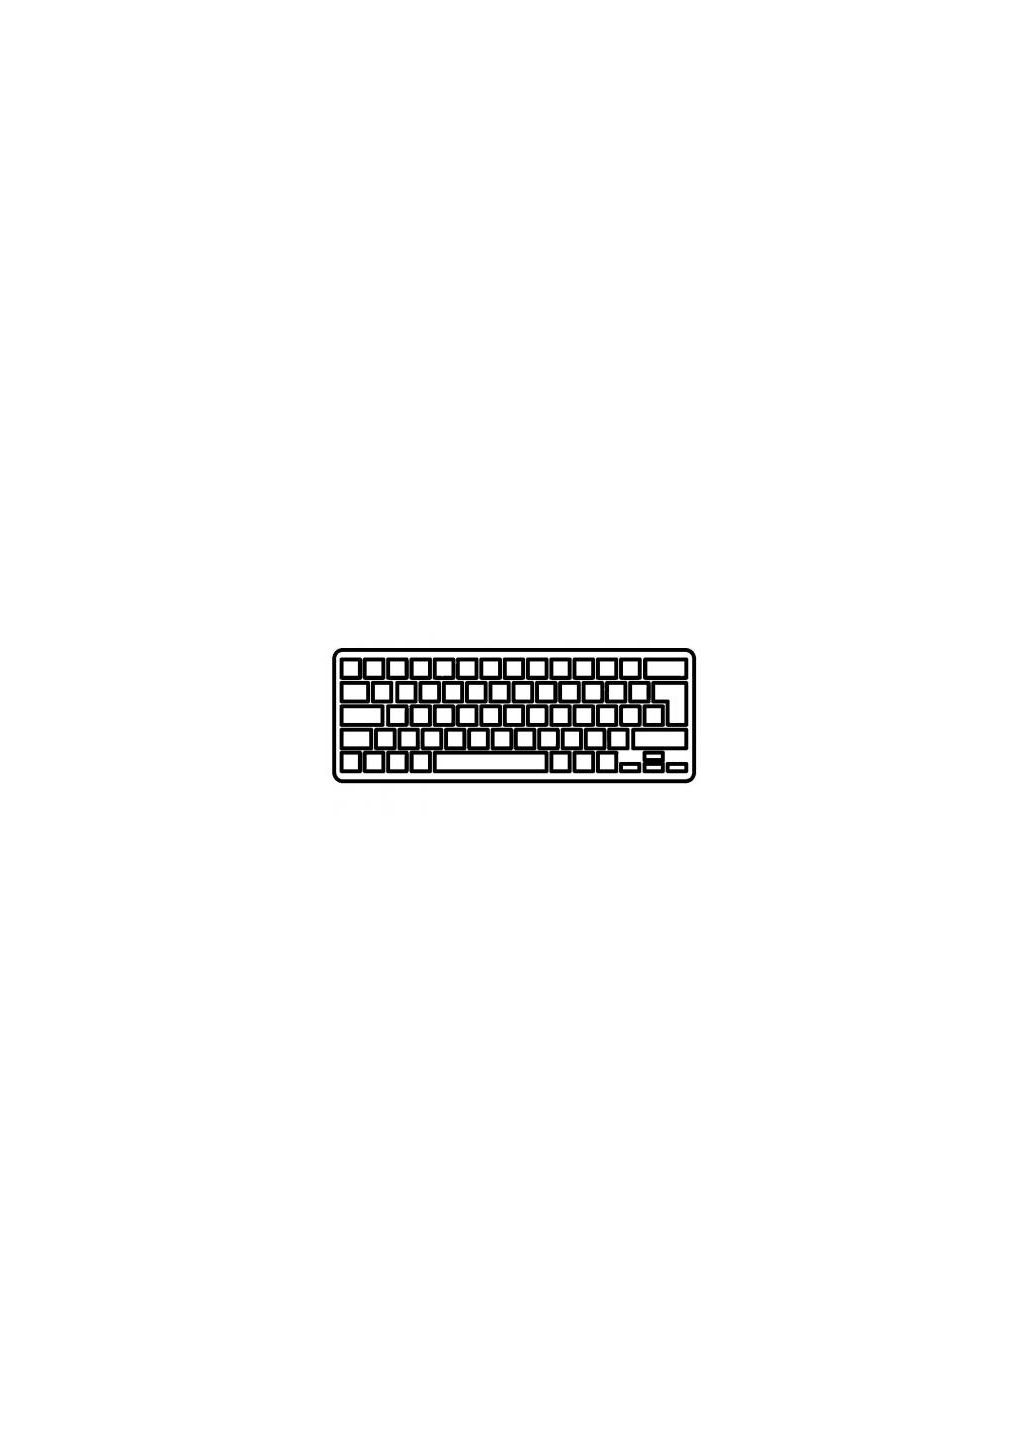 Клавиатура ноутбука (A43030) Samsung 900x3k черн.без рамки ua/ru/us (276707766)